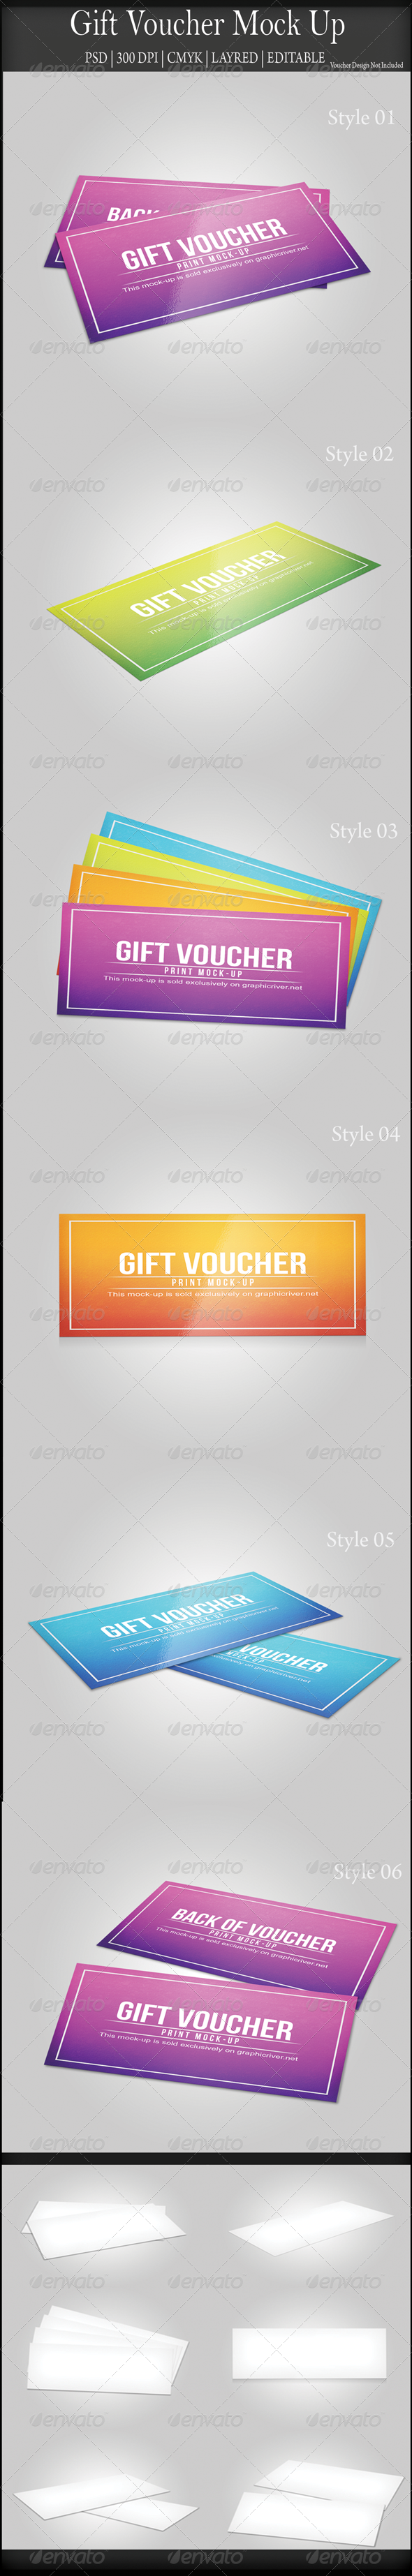 Gift voucher mock up image